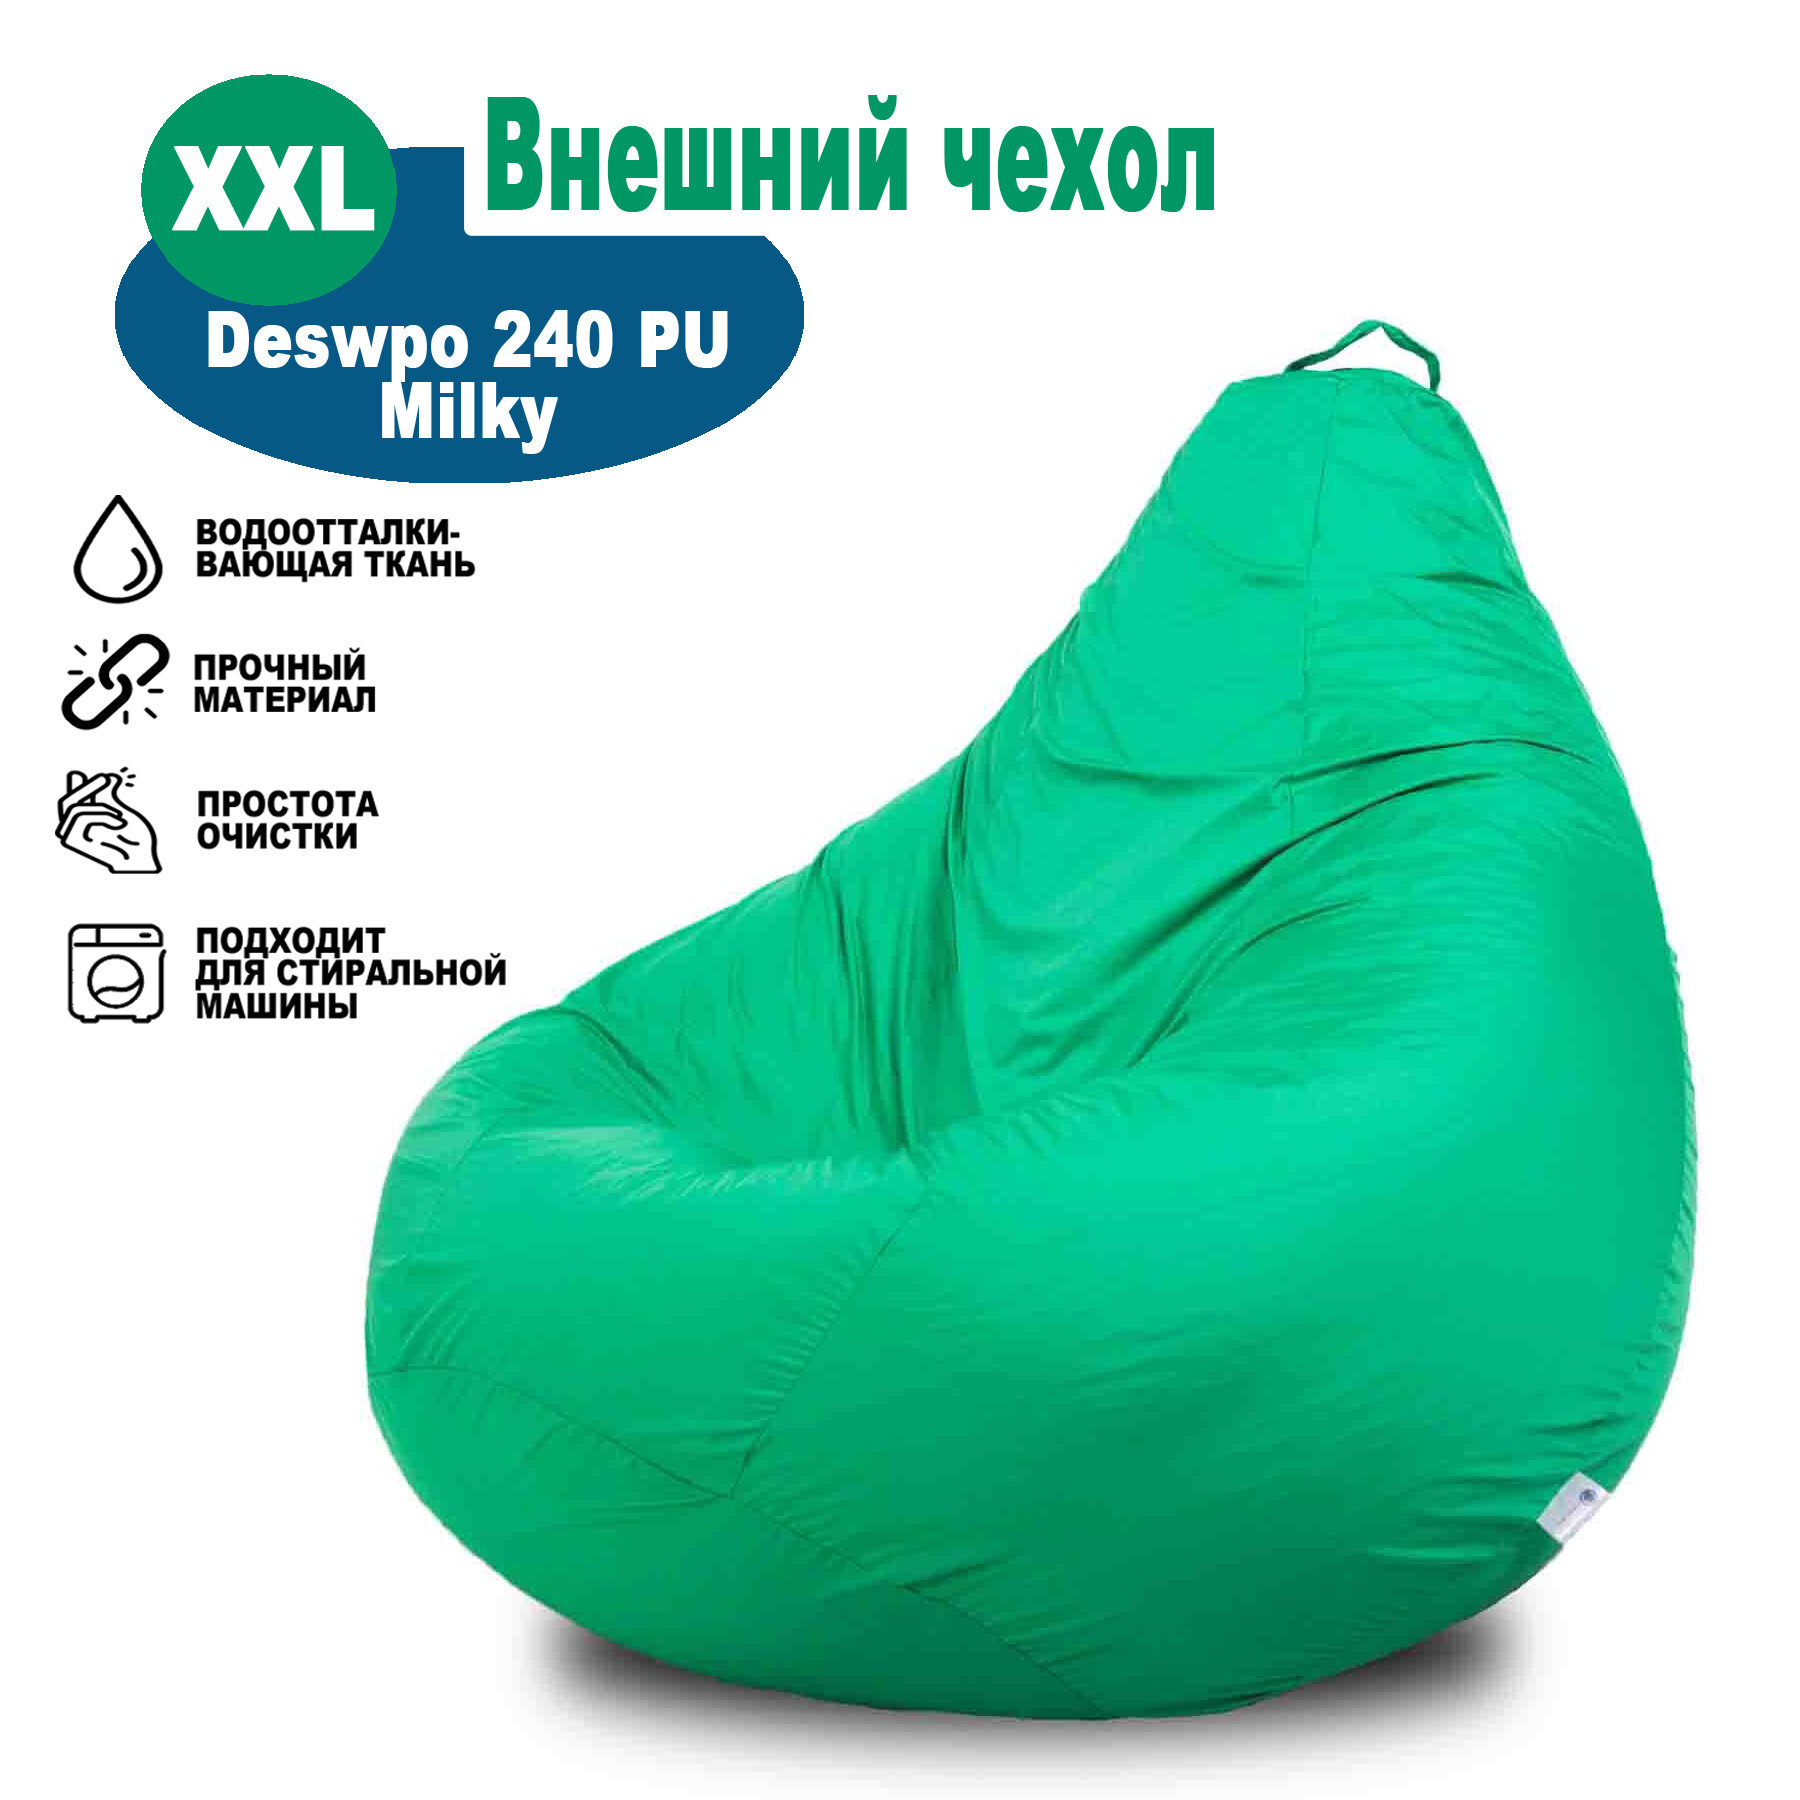 Чехол внешний на кресло-мешок высотой 120см Kreslo-Igrushka Груша xxl зеленый Дюспо